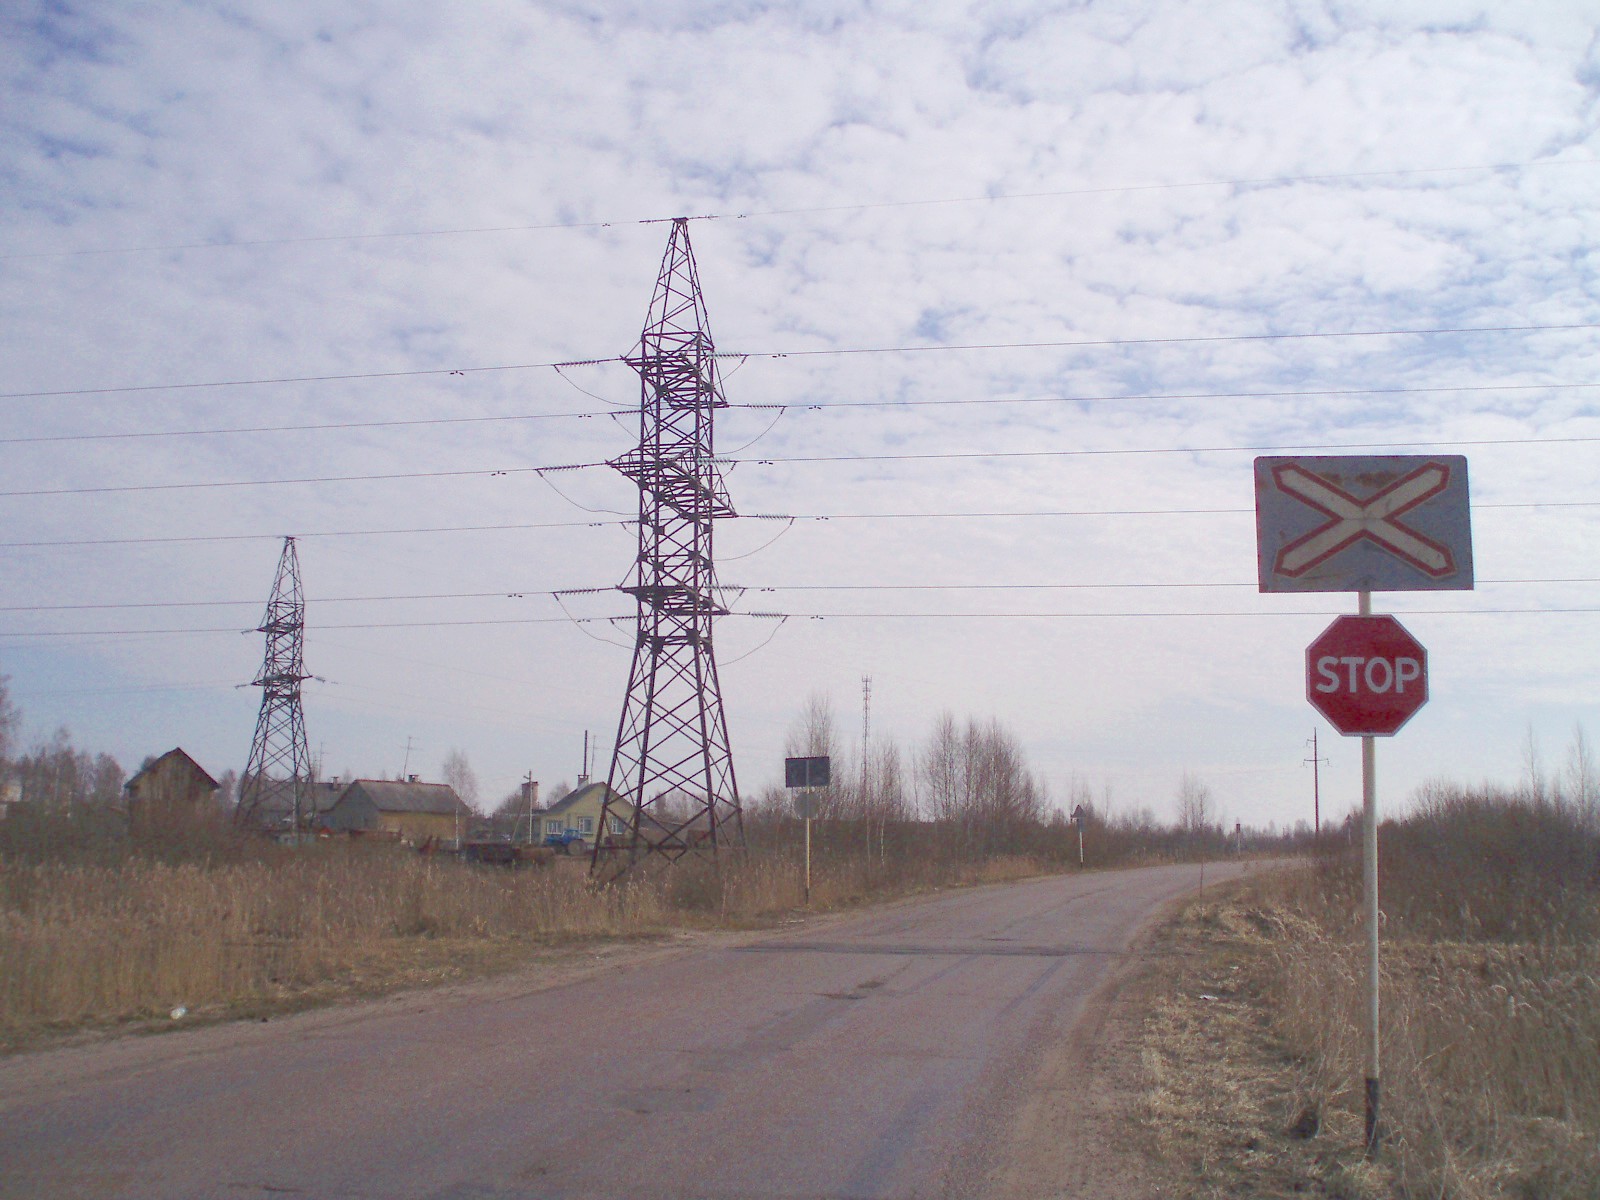 Узкоколейная железная дорога Кимрского торфопредприятия  — фотографии, сделанные в 2007 году (часть 1)